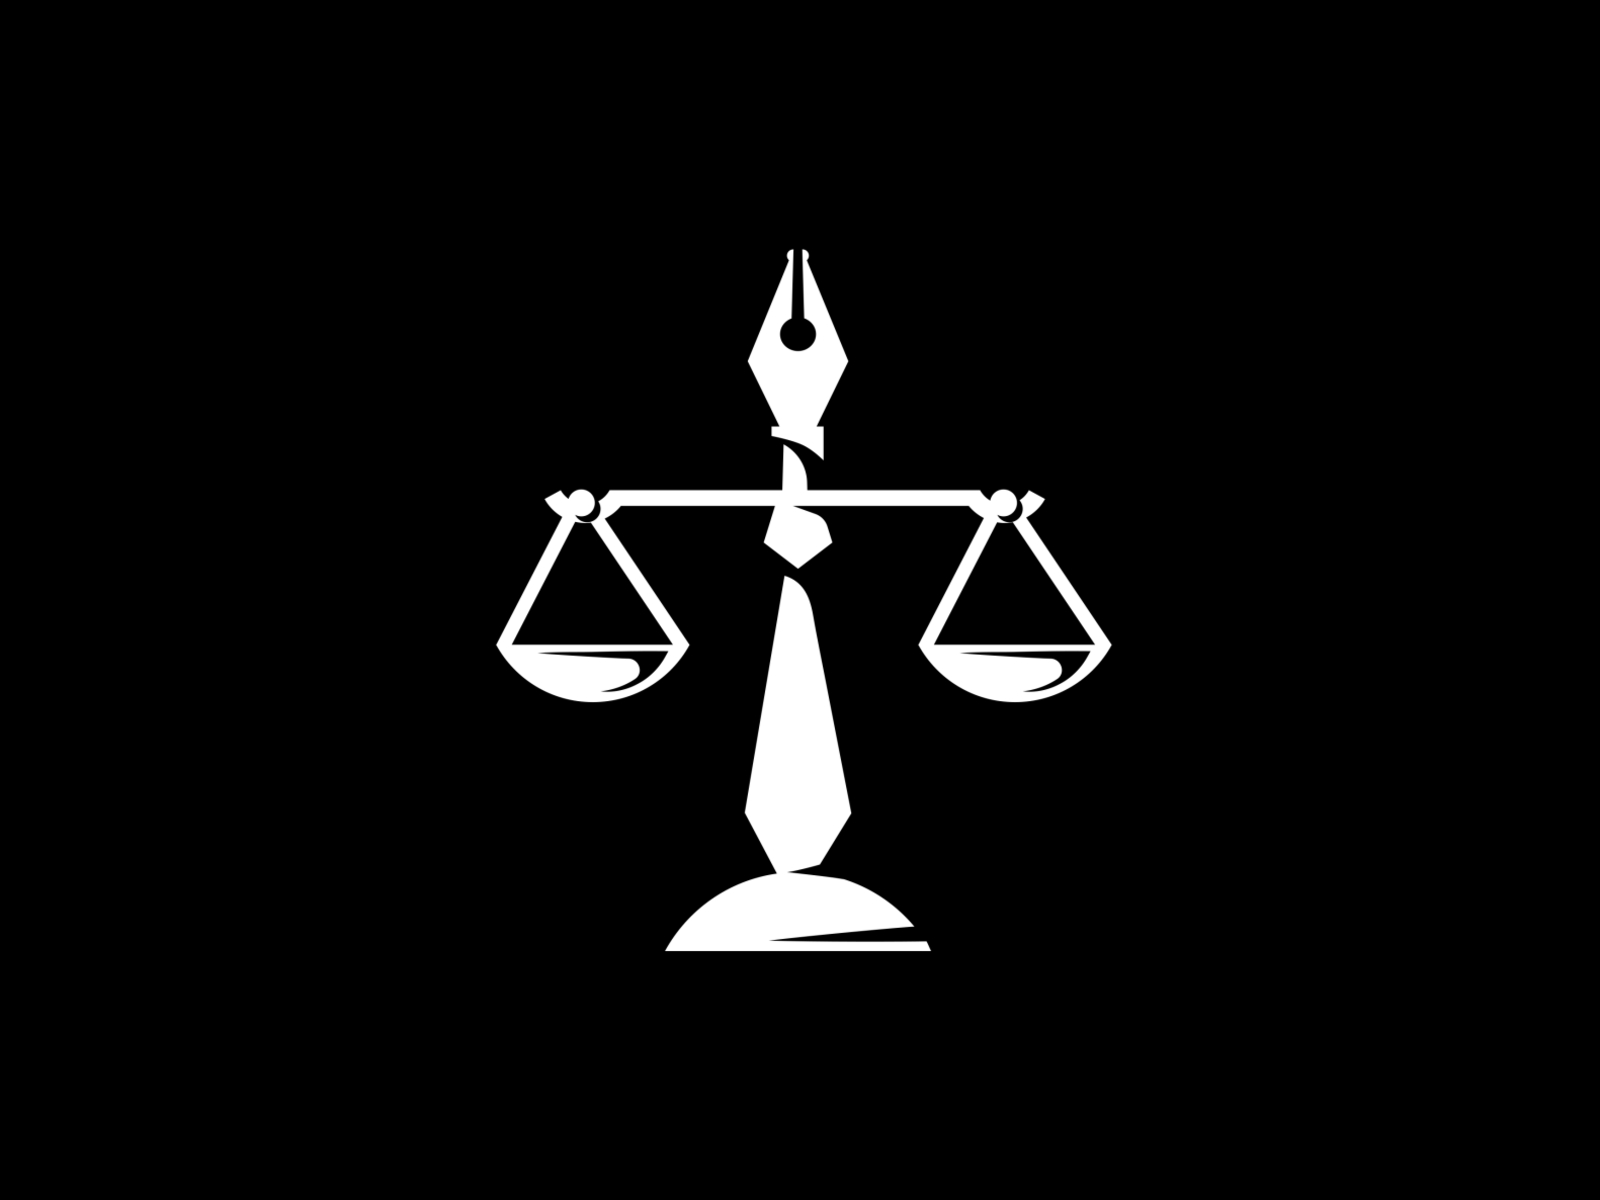 logo of a lawyer by Oleg Martcenko on Dribbble